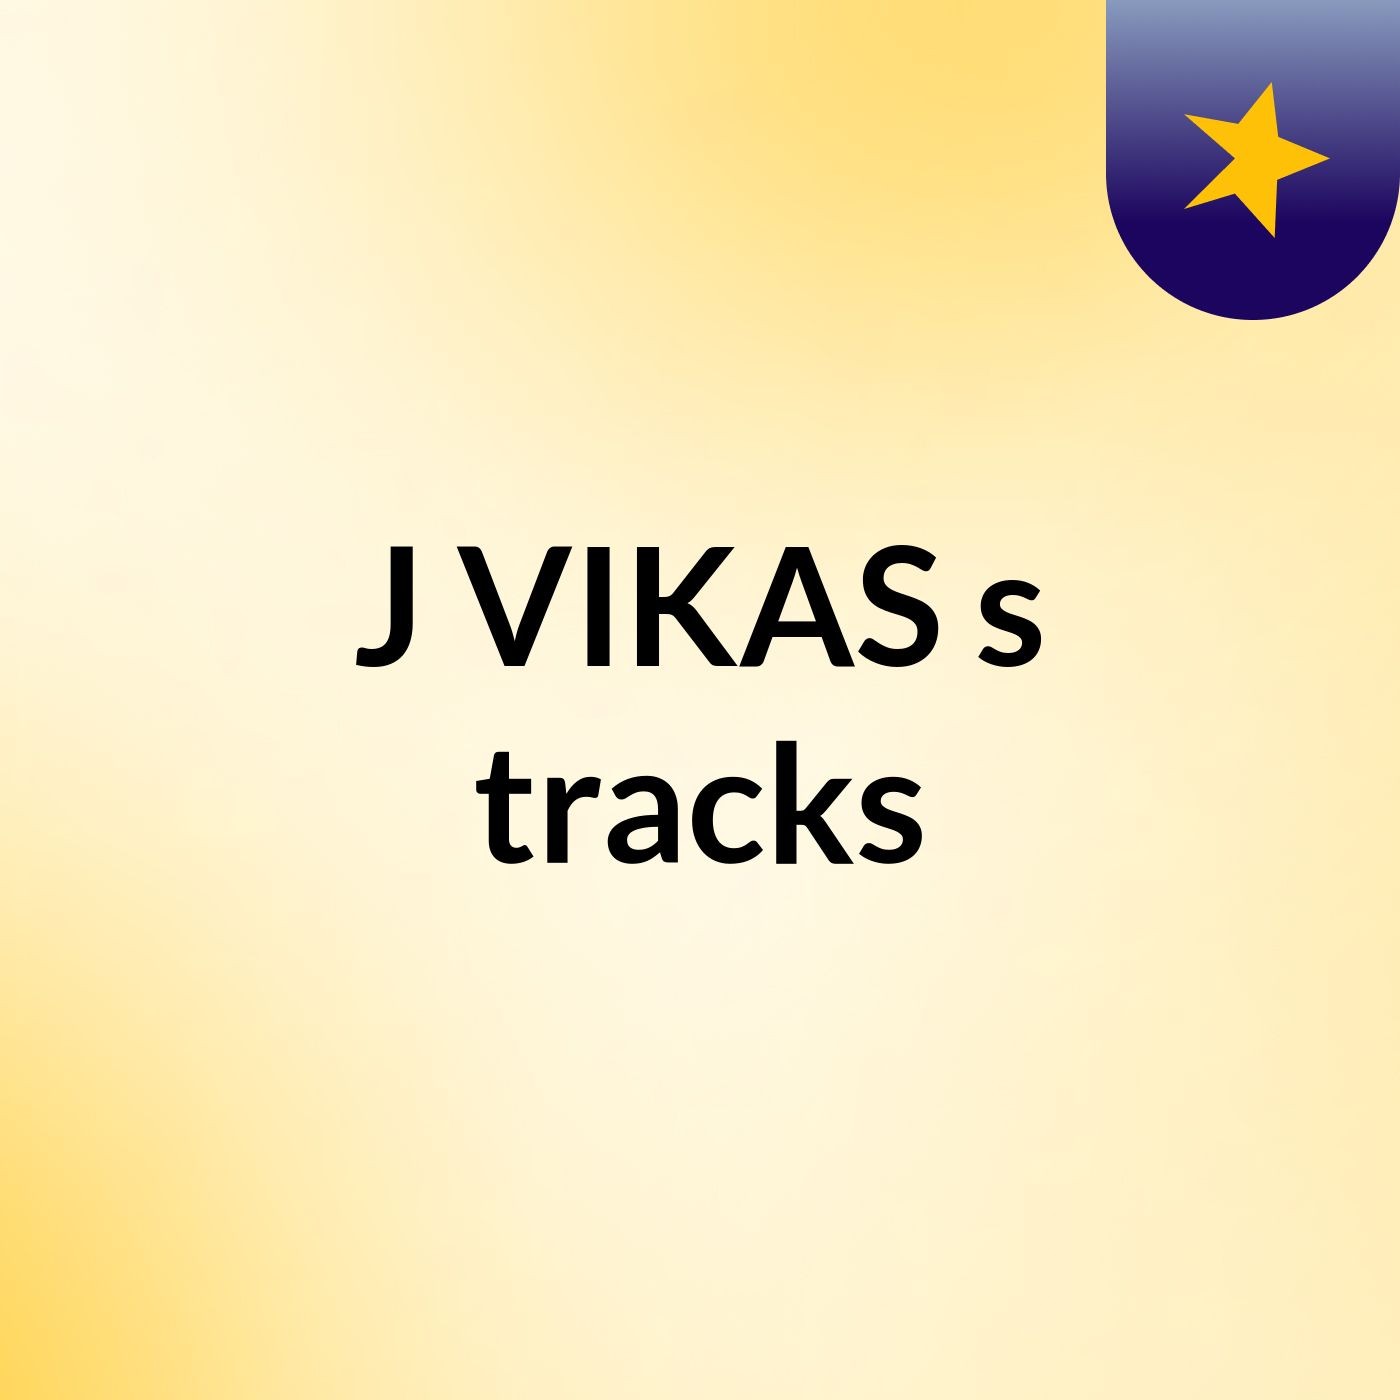 J VIKAS's tracks